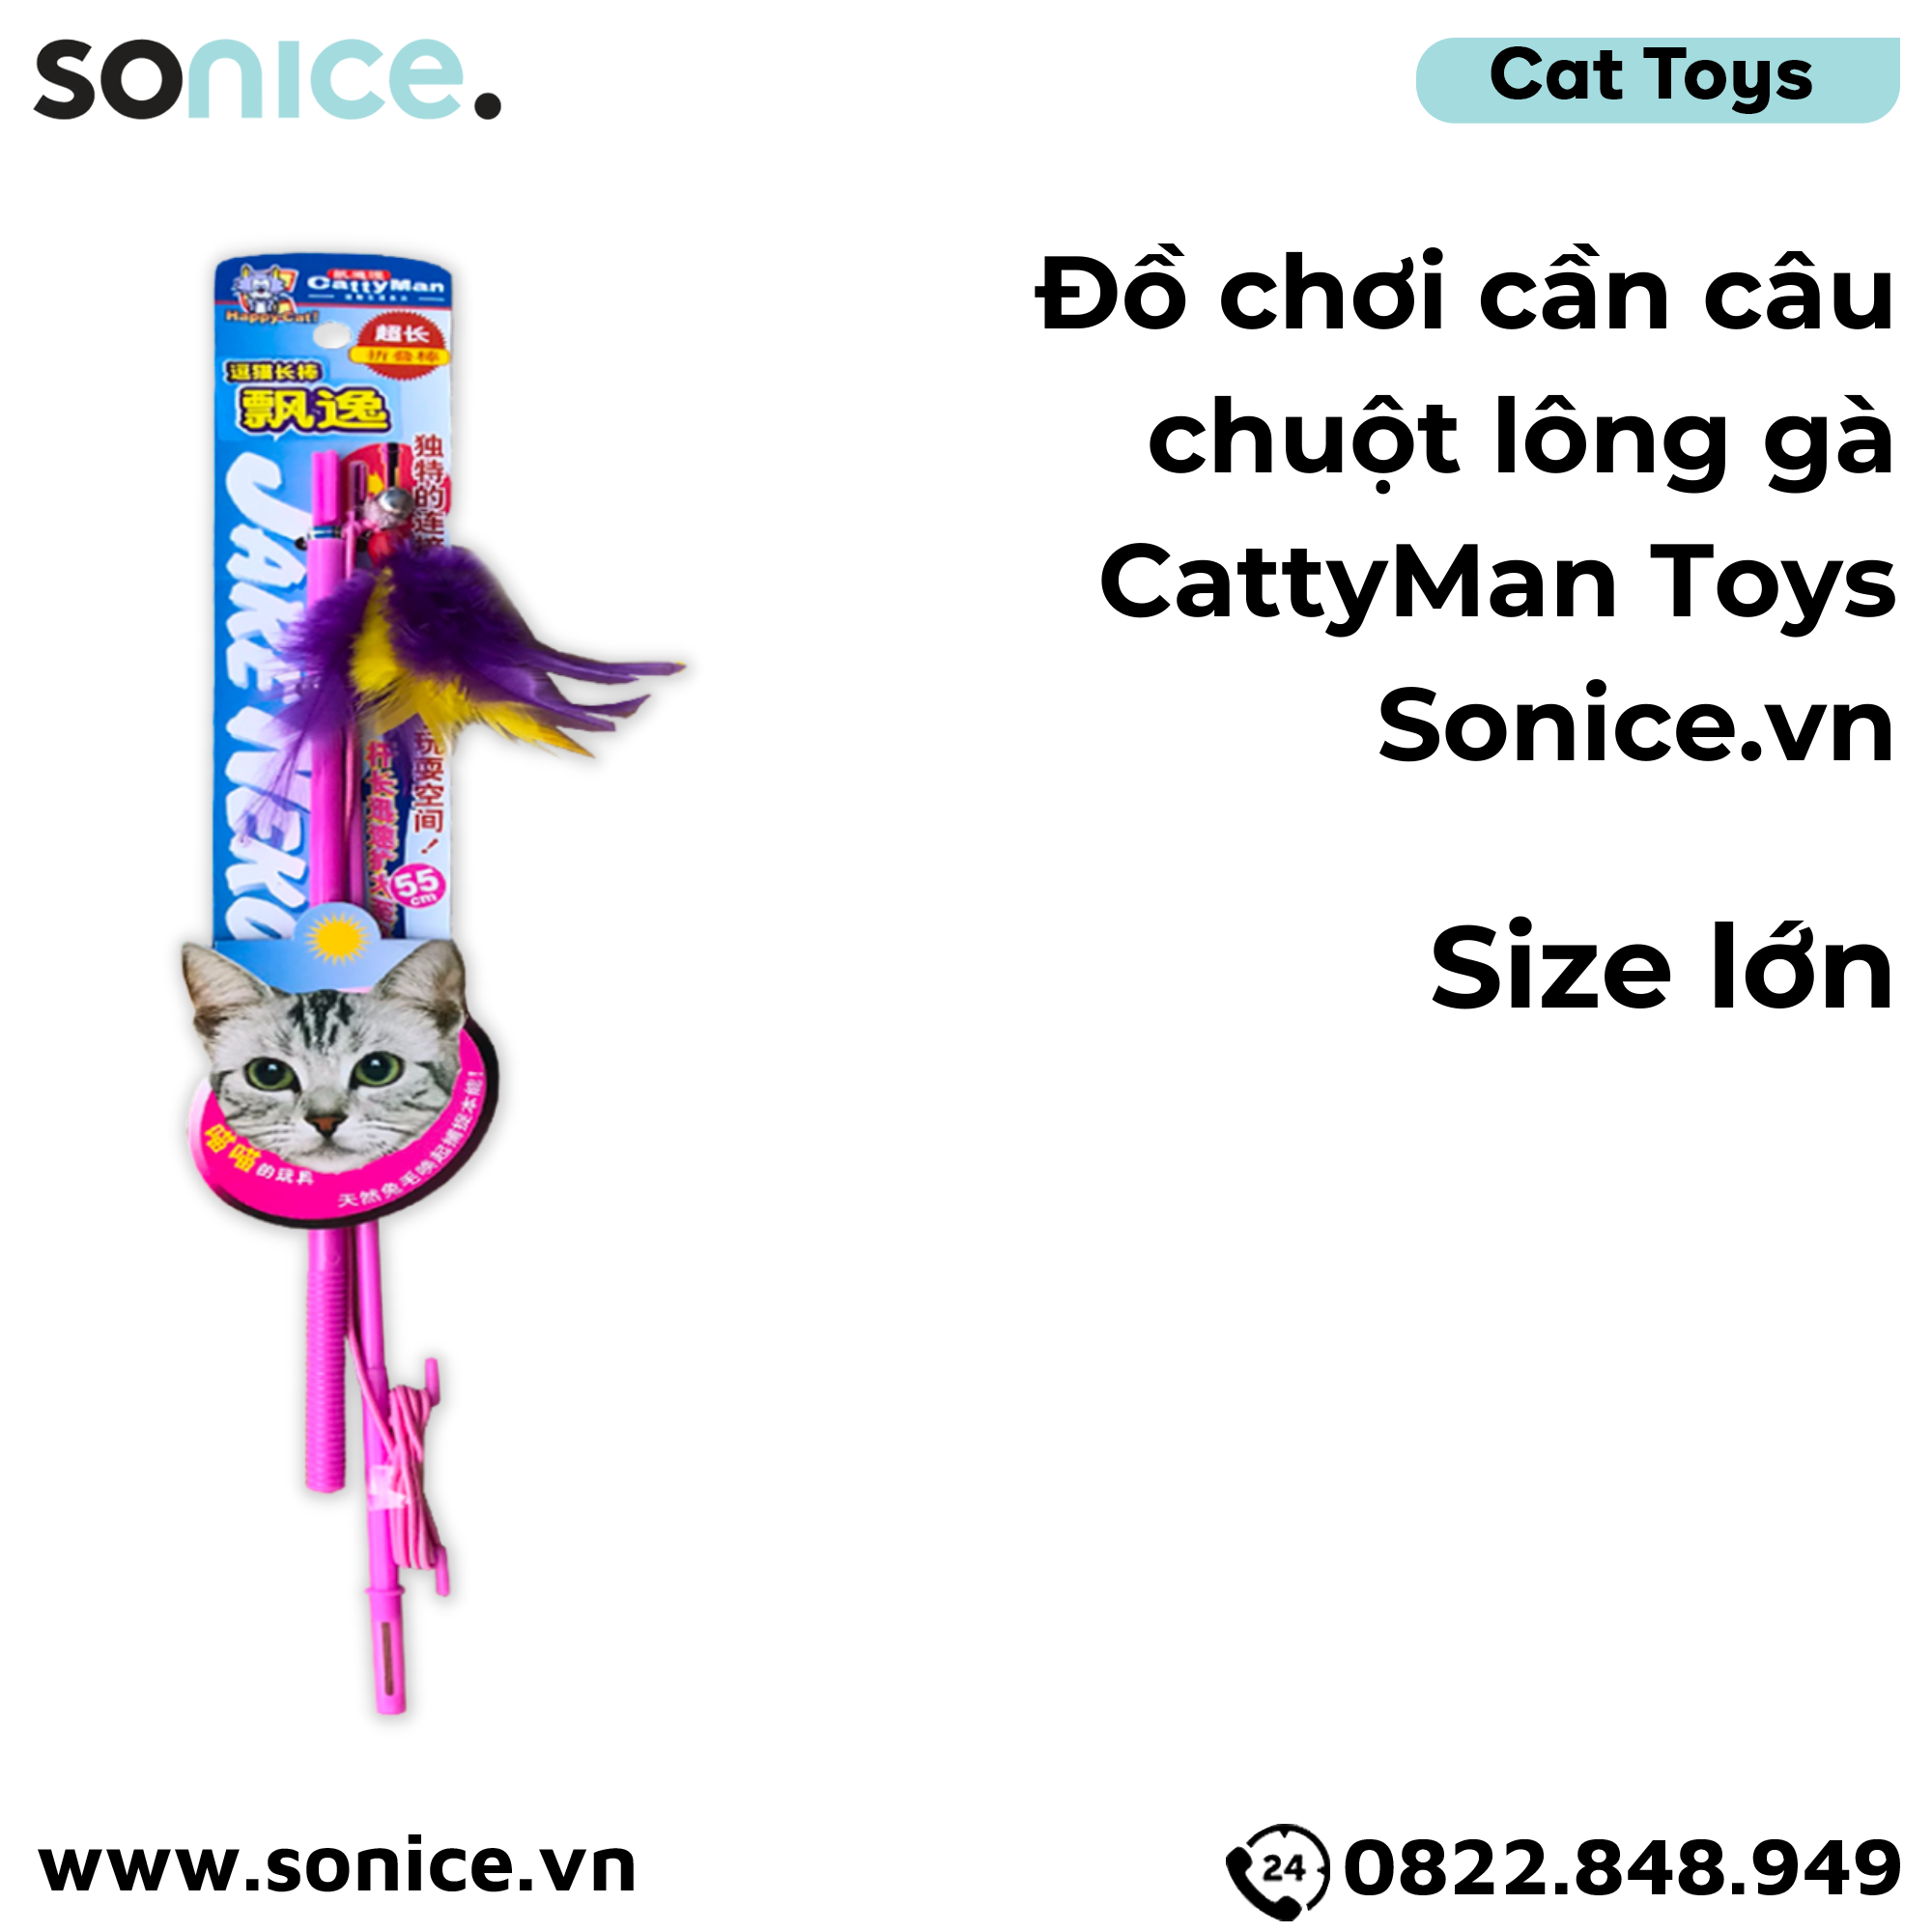  Đồ chơi cần câu chuột lông gà CattyMan Toys size lớn - SONICE. 